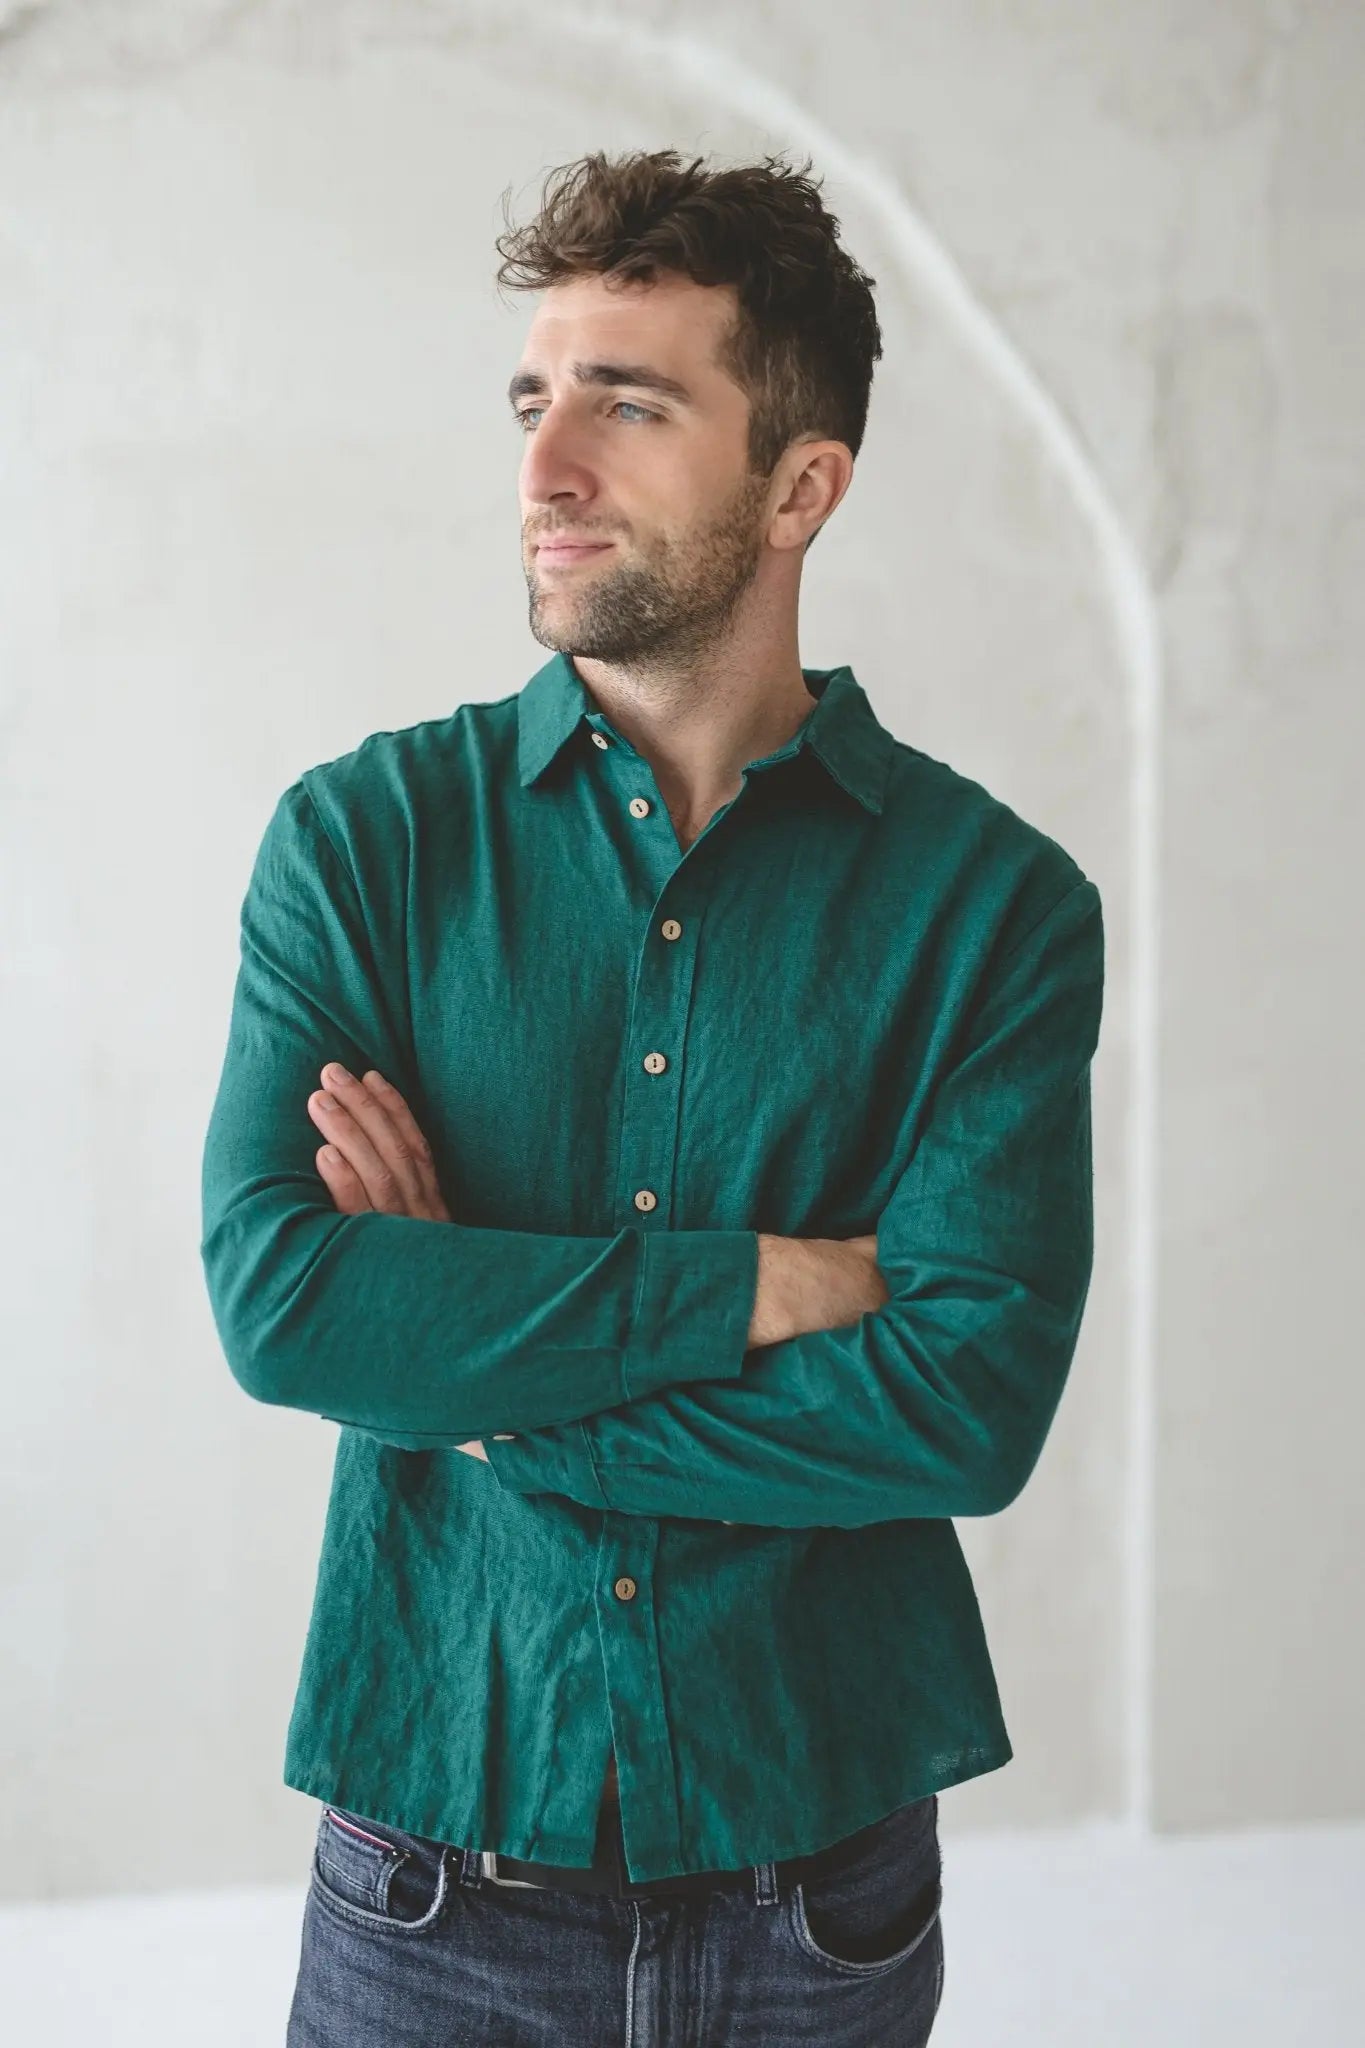 Men's Fitted Linen Shirt - Epic Linen luxury linen